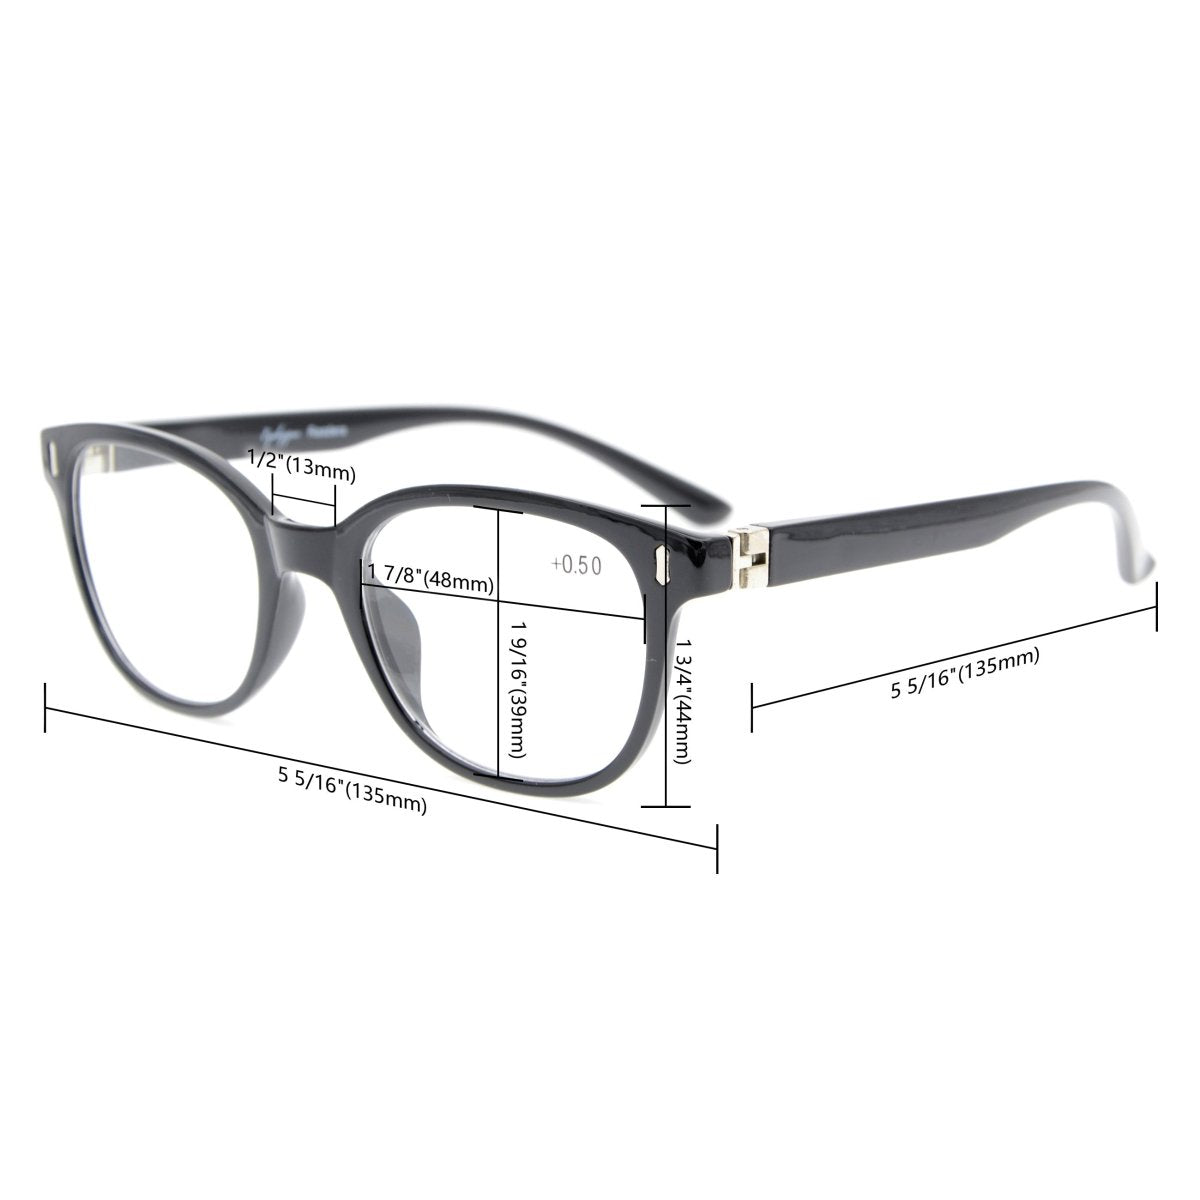 2 Pack Oval Retro Elegant Reading Glasses for Women Men R122eyekeeper.com